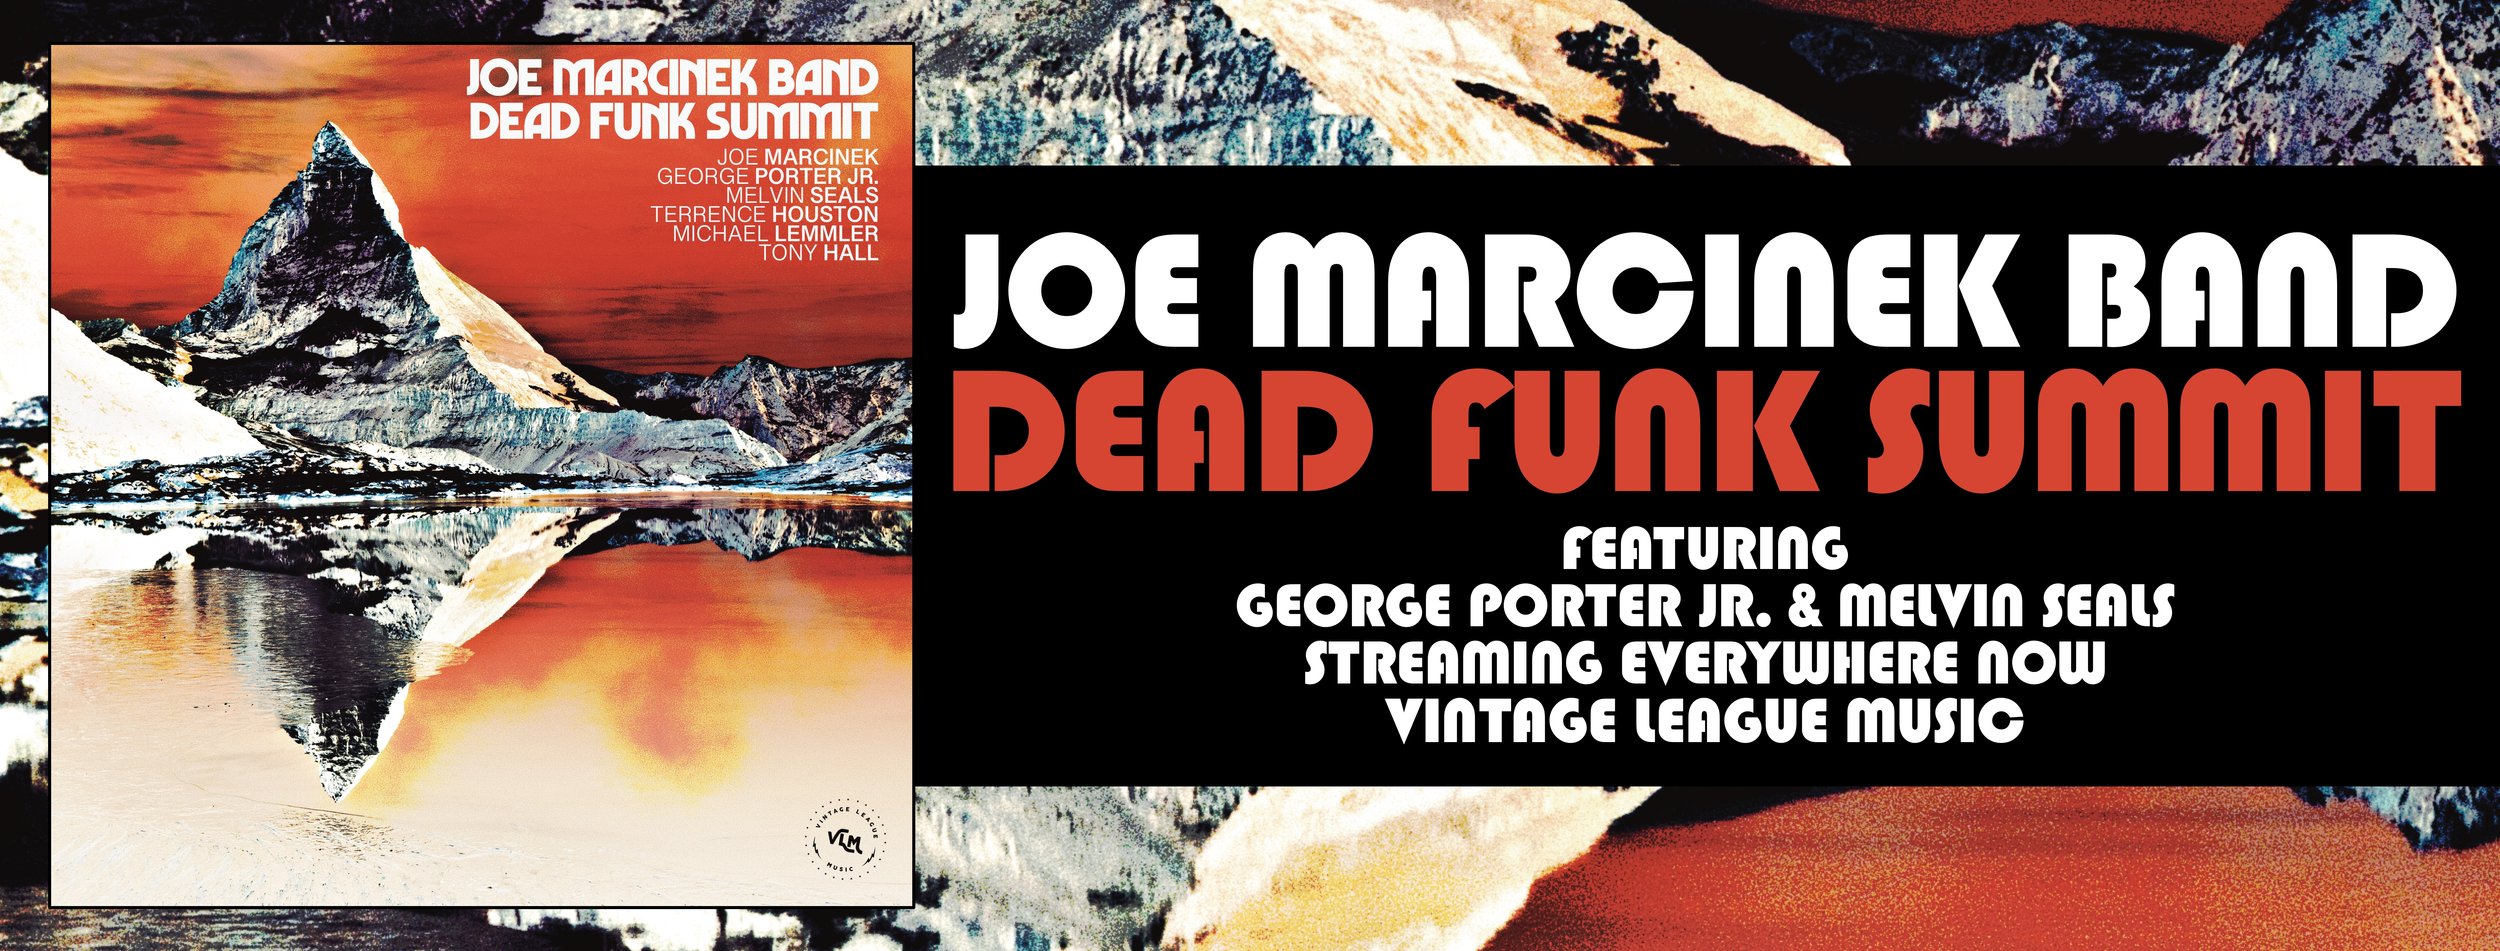 Dead Funk Summit Album Banner@3x.jpg